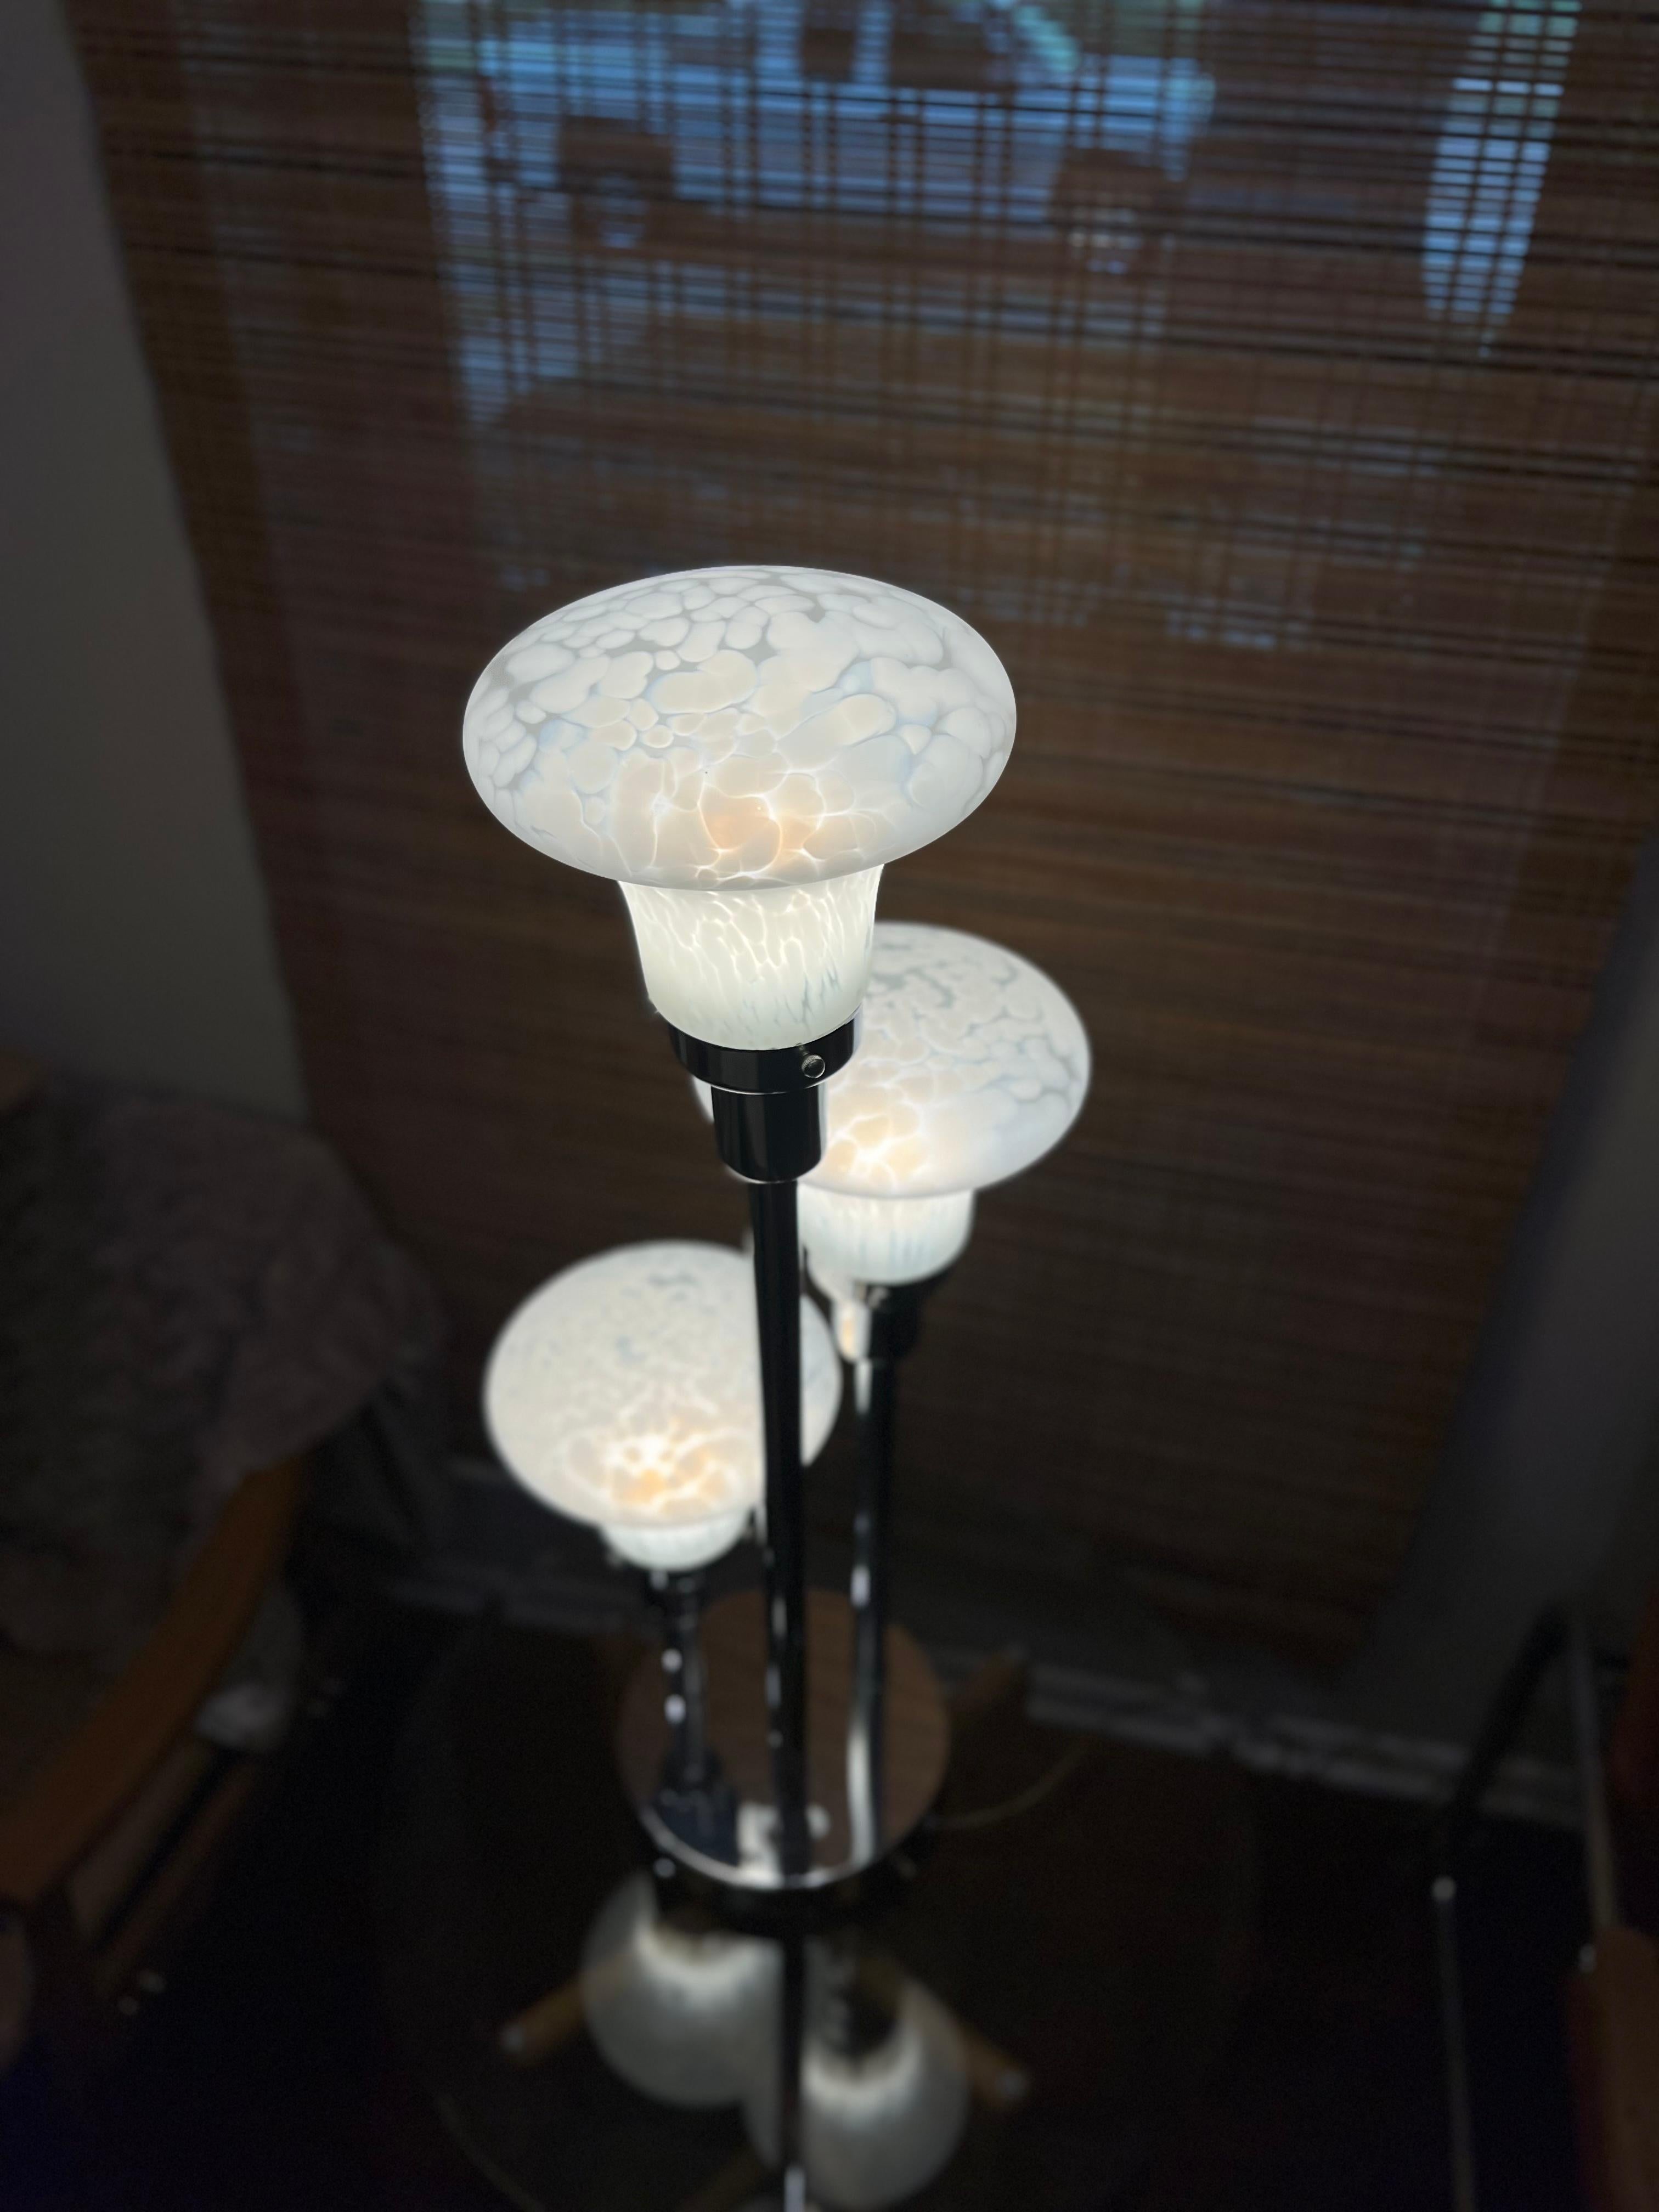 Lampe de table vintage folle en verre soufflé de Murano blanc léopard tacheté, montée sur des bases circulaires chromées. Fabriqué dans les années 1970. En presque excellent état. 

Dimensions :
34